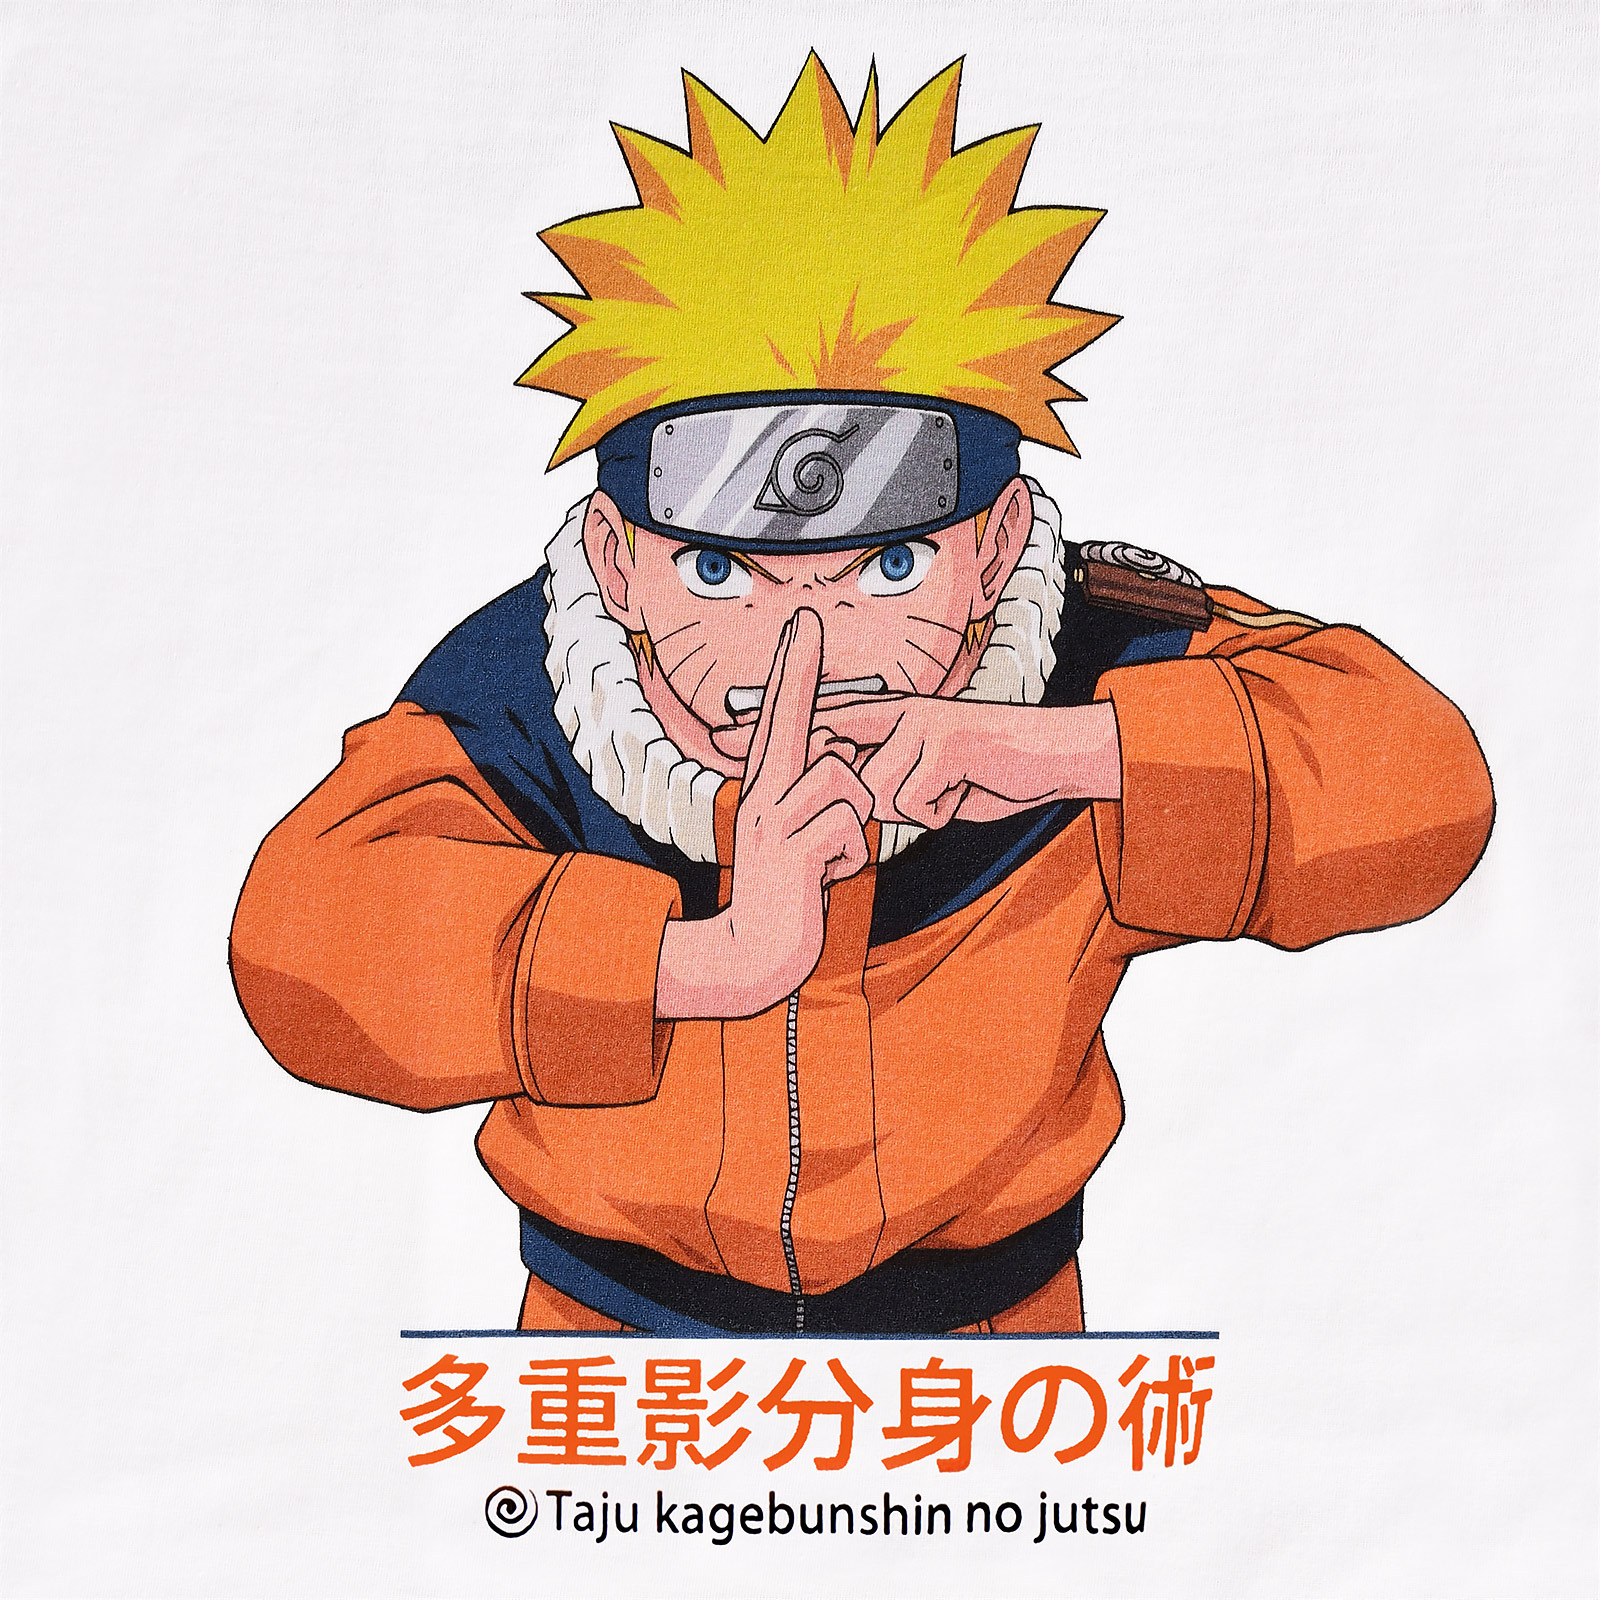 Naruto Uzumaki Kage Bunshin no Jutsu T-Shirt weiß